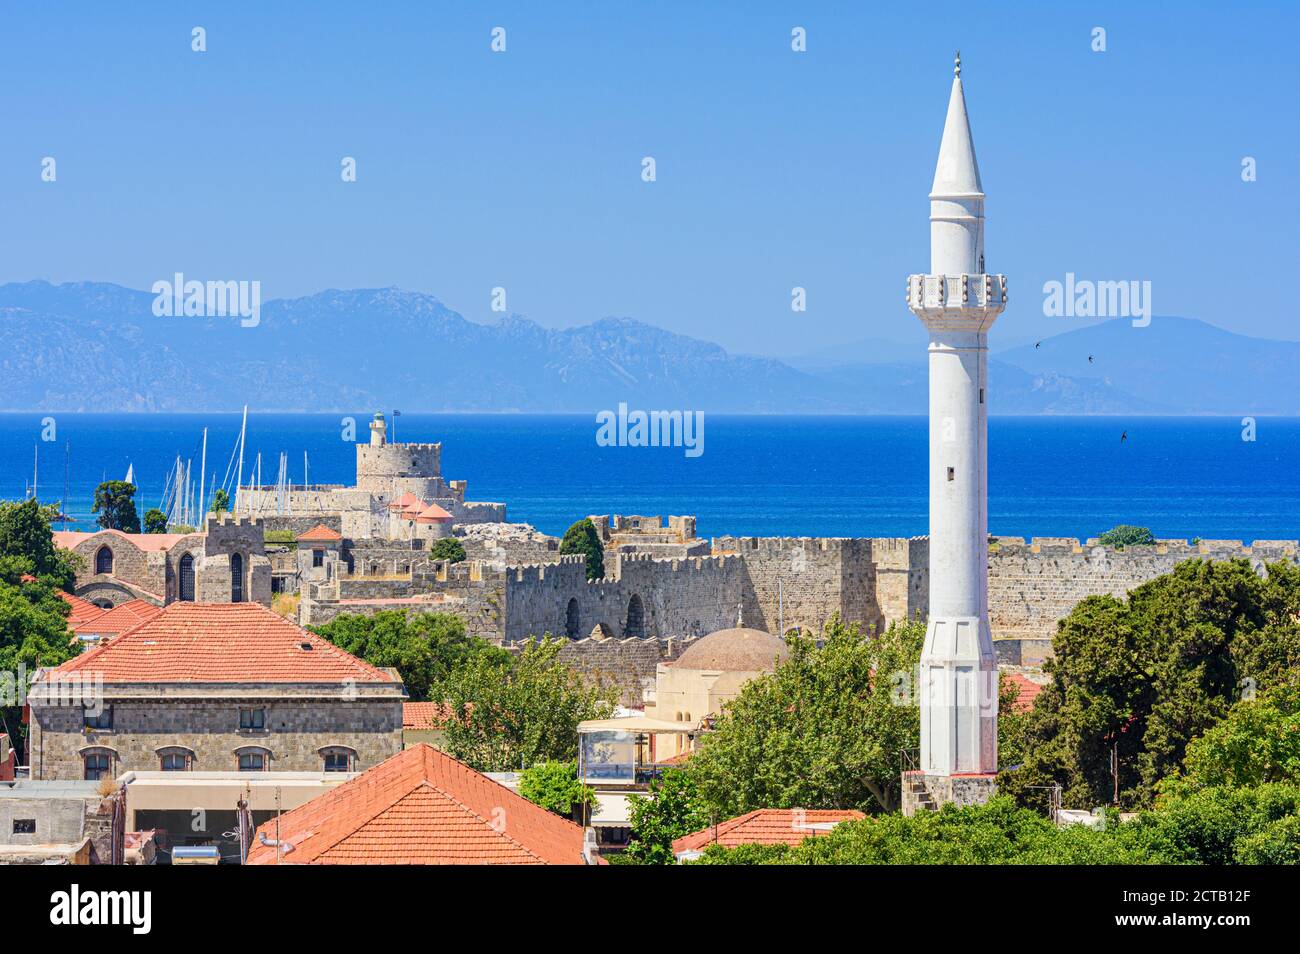 Vista sul mare e sulle antiche mura medievali della città di Rodi dominate dal minareto della Moschea Ibrahim Pasha a Rodi, Grecia Foto Stock